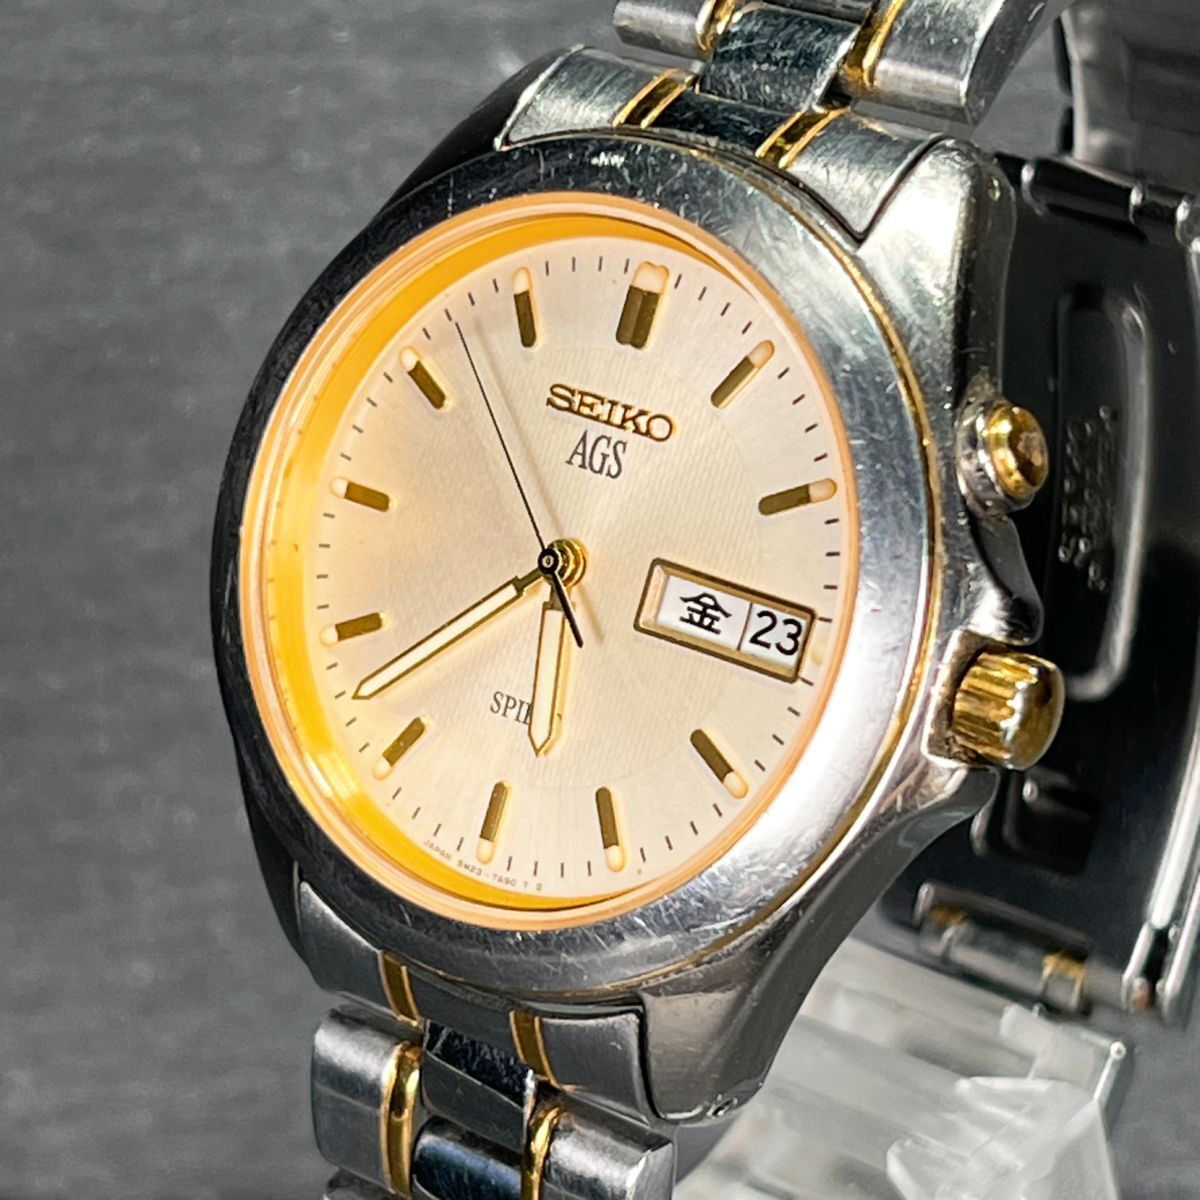 SEIKO セイコー SPIRIT スピリット AGS エージーエス 5M23-7A60 腕時計 アナログ 自動巻き デイデイト 3針 アイボリー文字盤 コンビカラーの画像2